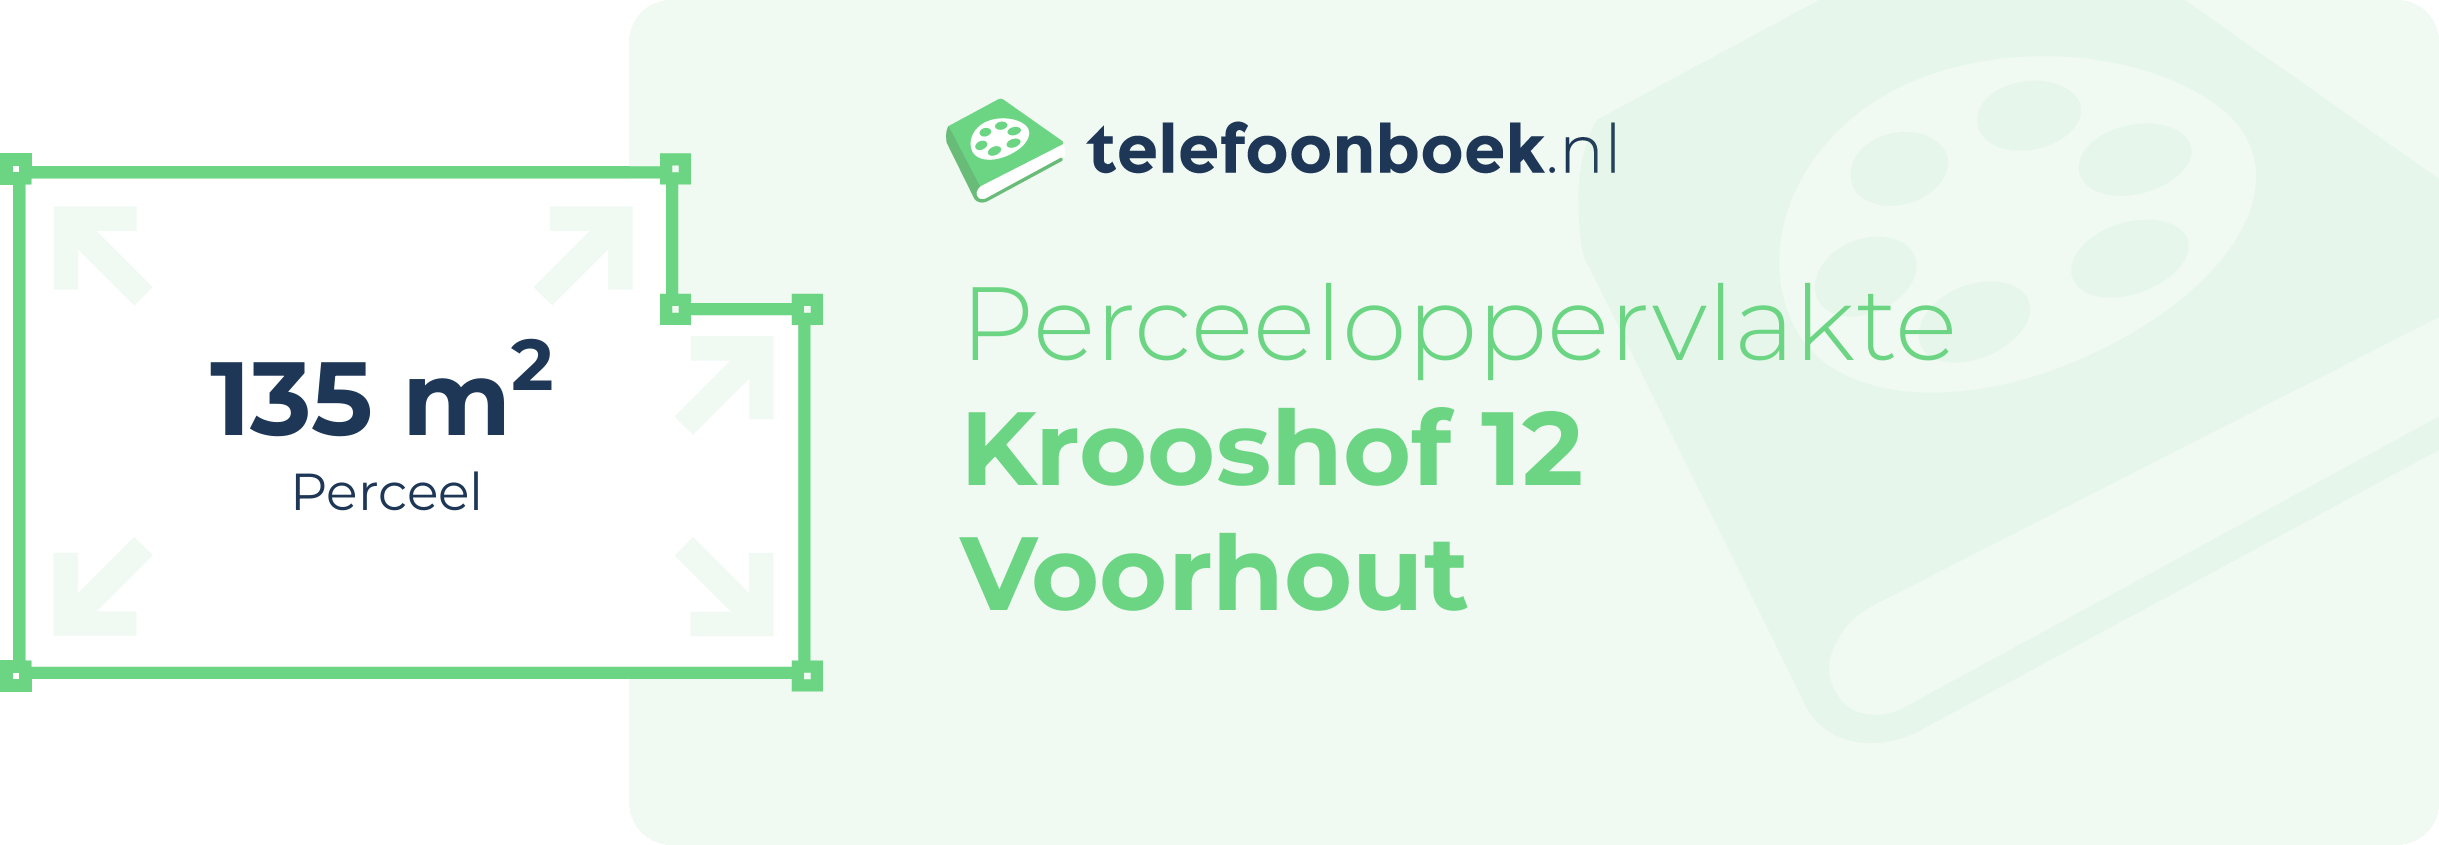 Perceeloppervlakte Krooshof 12 Voorhout